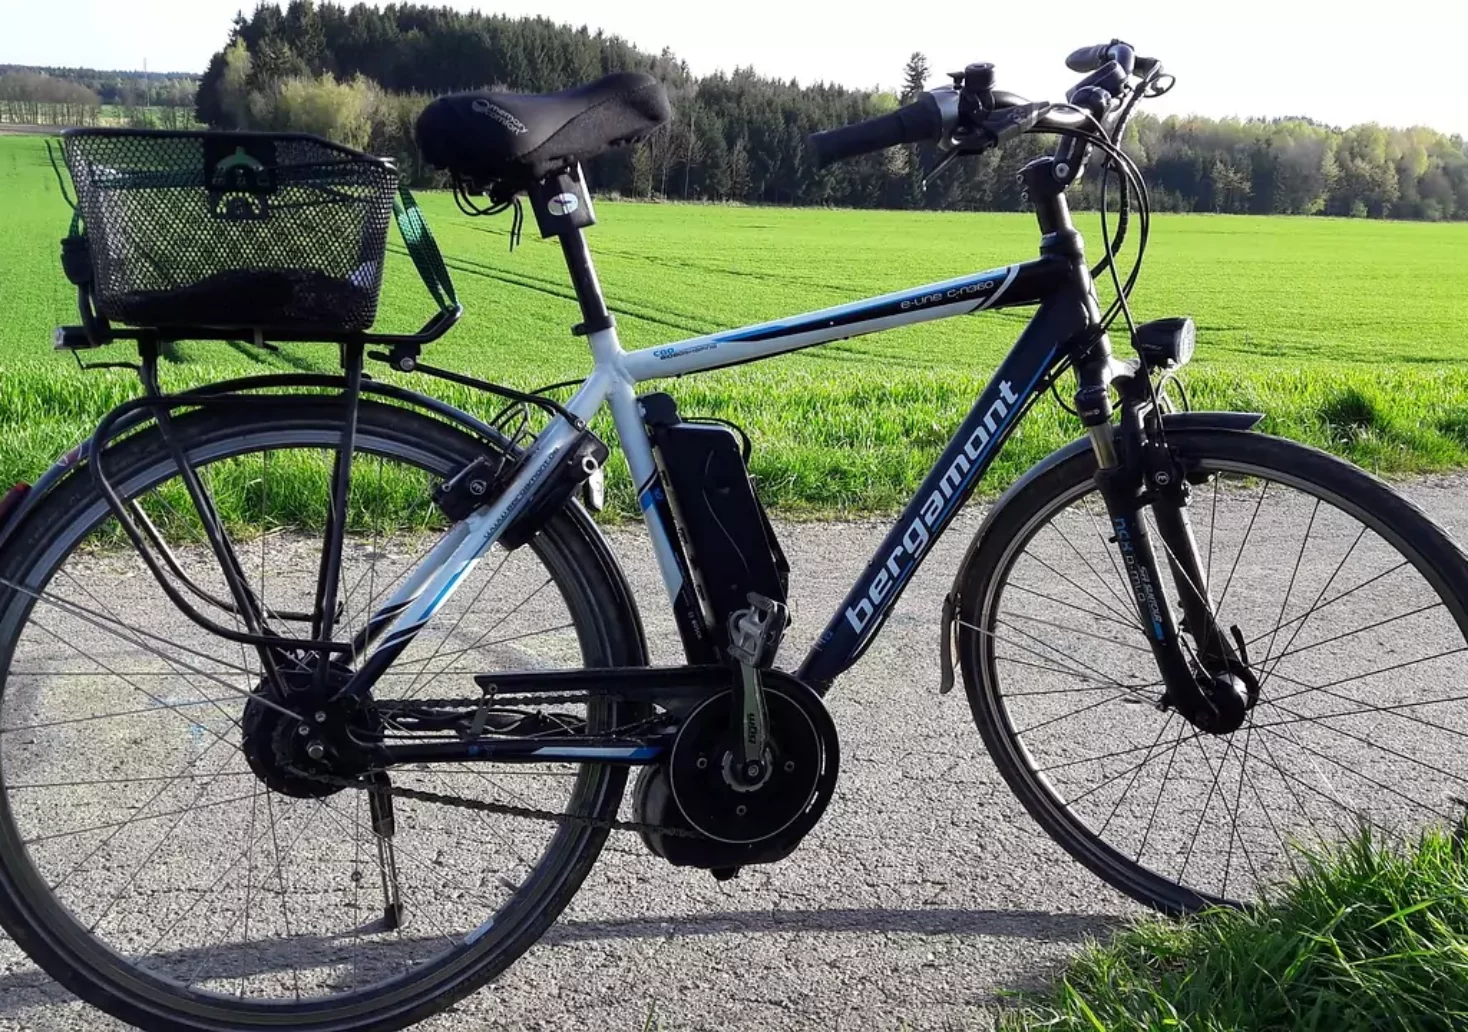 Mehrere Tausend Euro Schaden: Diebe stahlen teures E-Bike